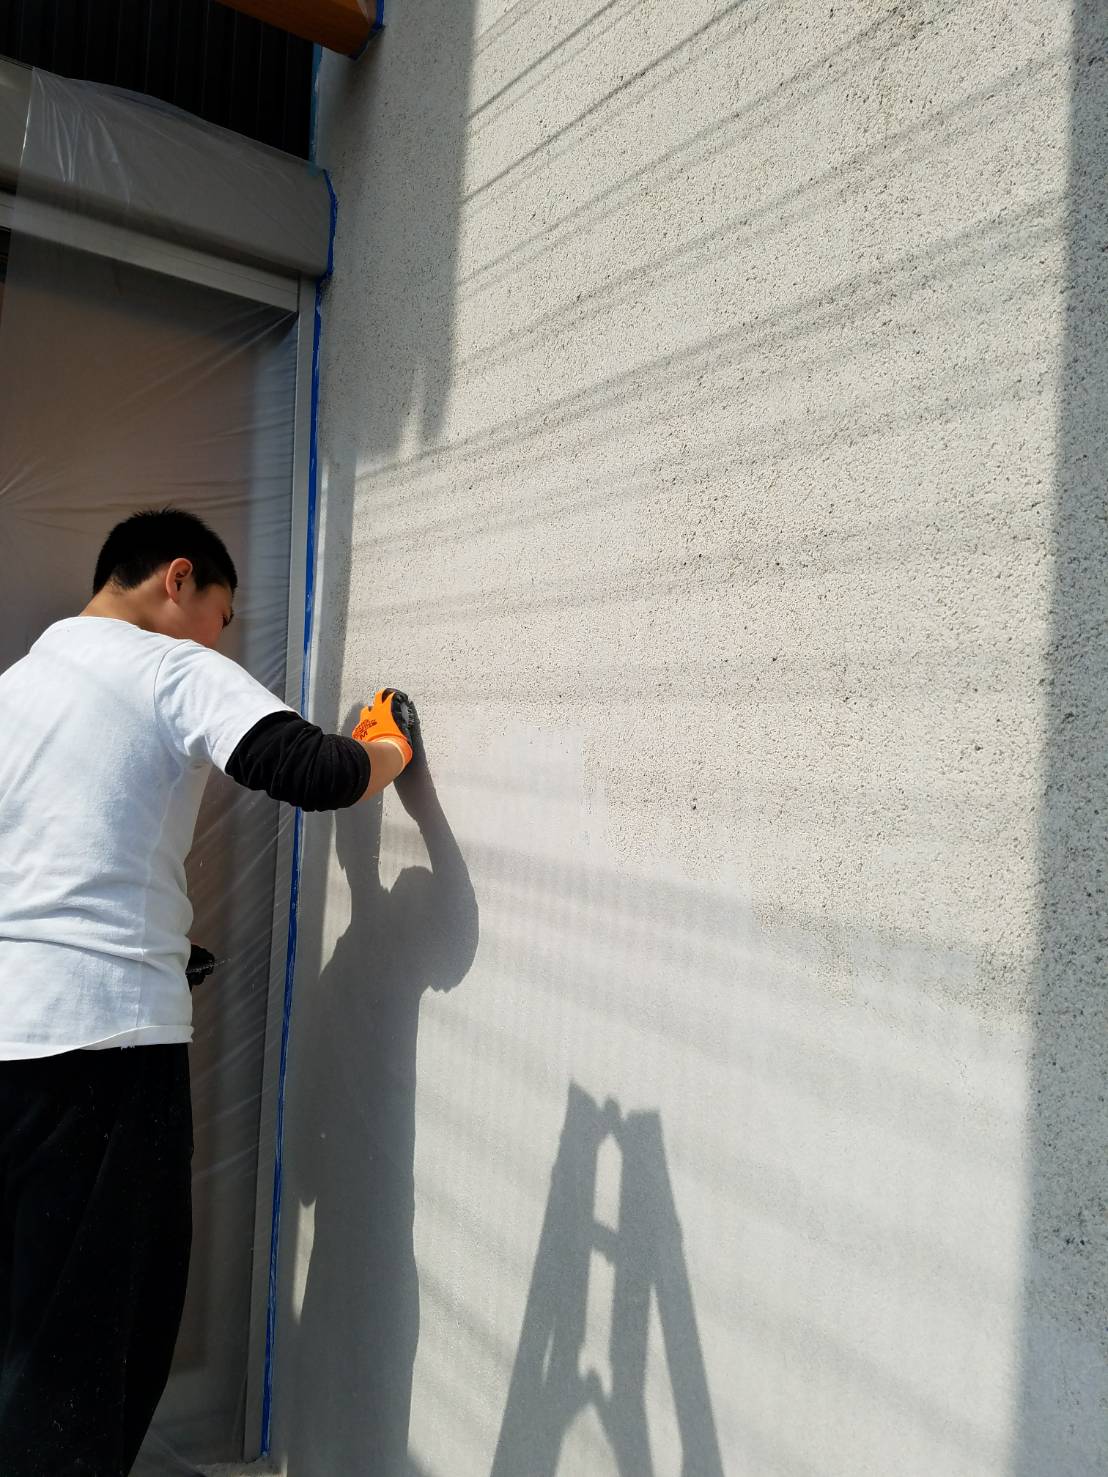 近畿壁材  蔵直し漆喰強化、砂漆喰厚付け、掻き落し添加剤自然素材で脆弱な漆喰壁を強化・速乾でパワーアップし、デザインの幅を広げます